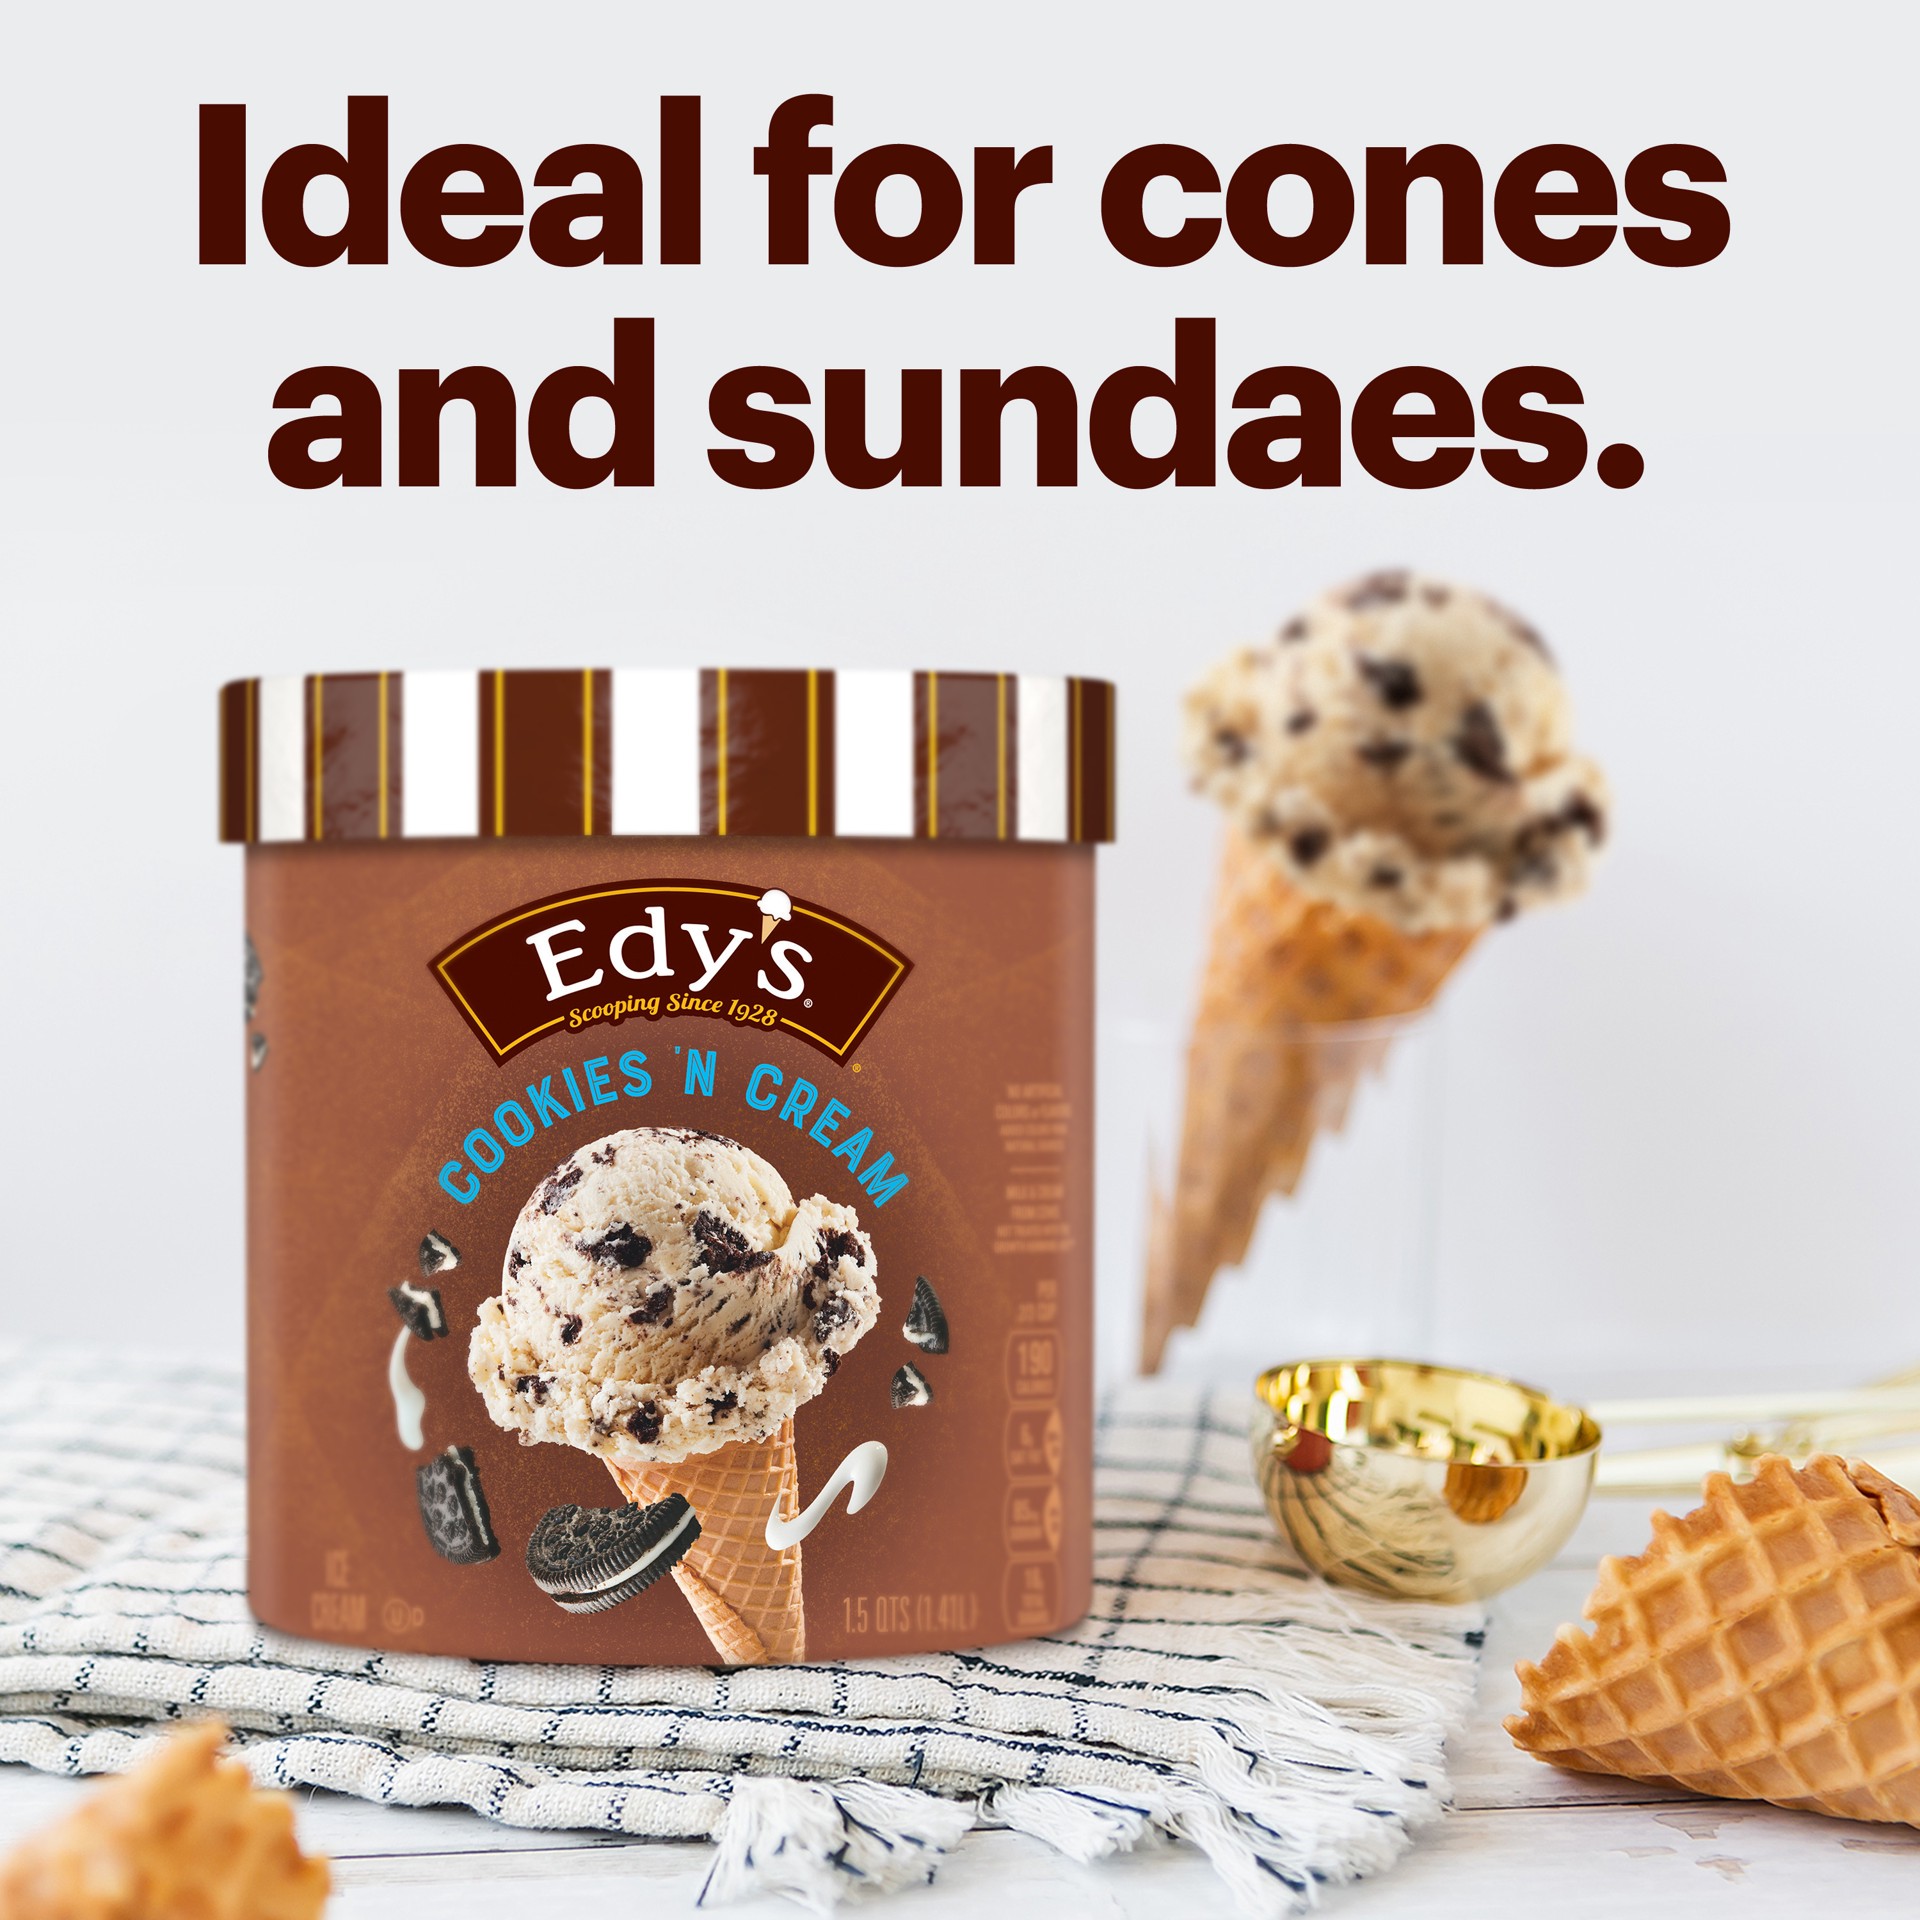 slide 5 of 5, Edy's Ice Cream 1.5 qt, 1.5 qt